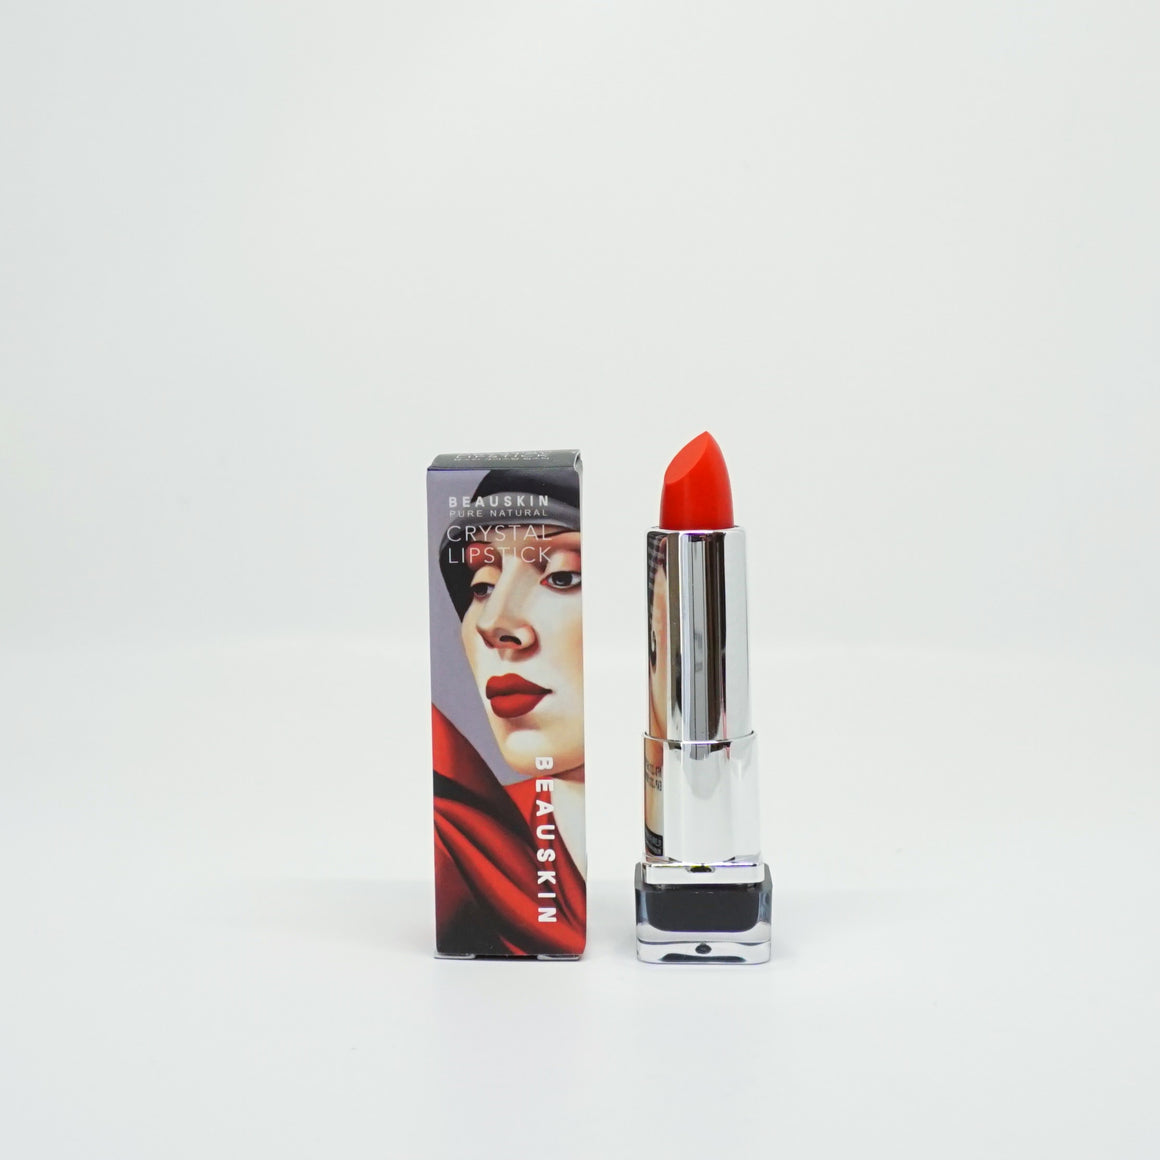 BEAUSKIN Crystal Lipstick